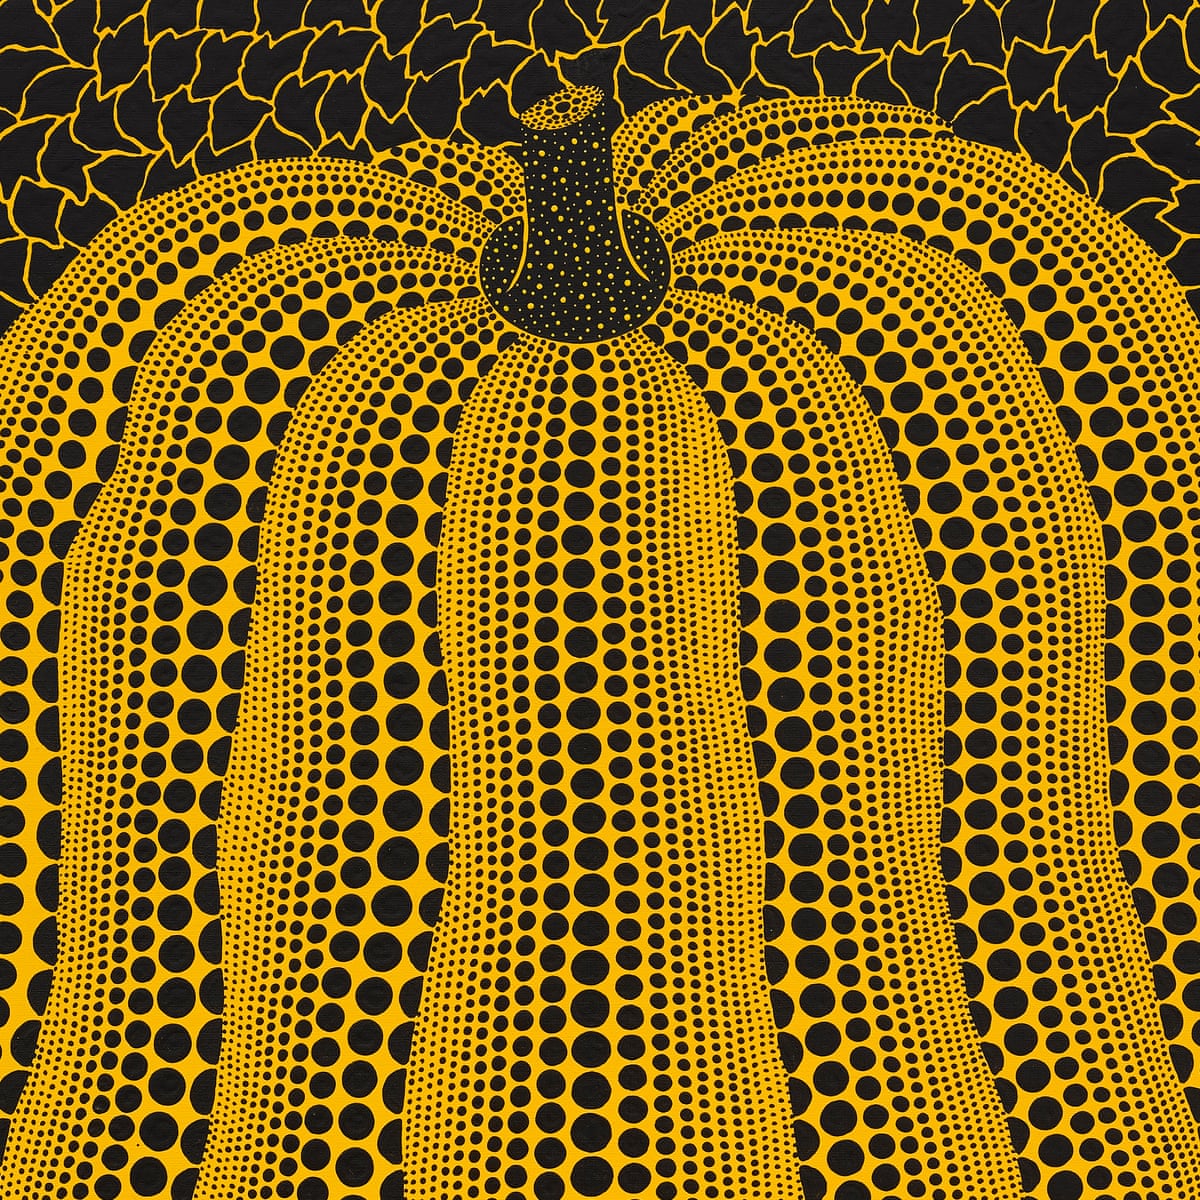 Yayoi Kusama's Pumpkin: dot to dot veggie or metaphor for